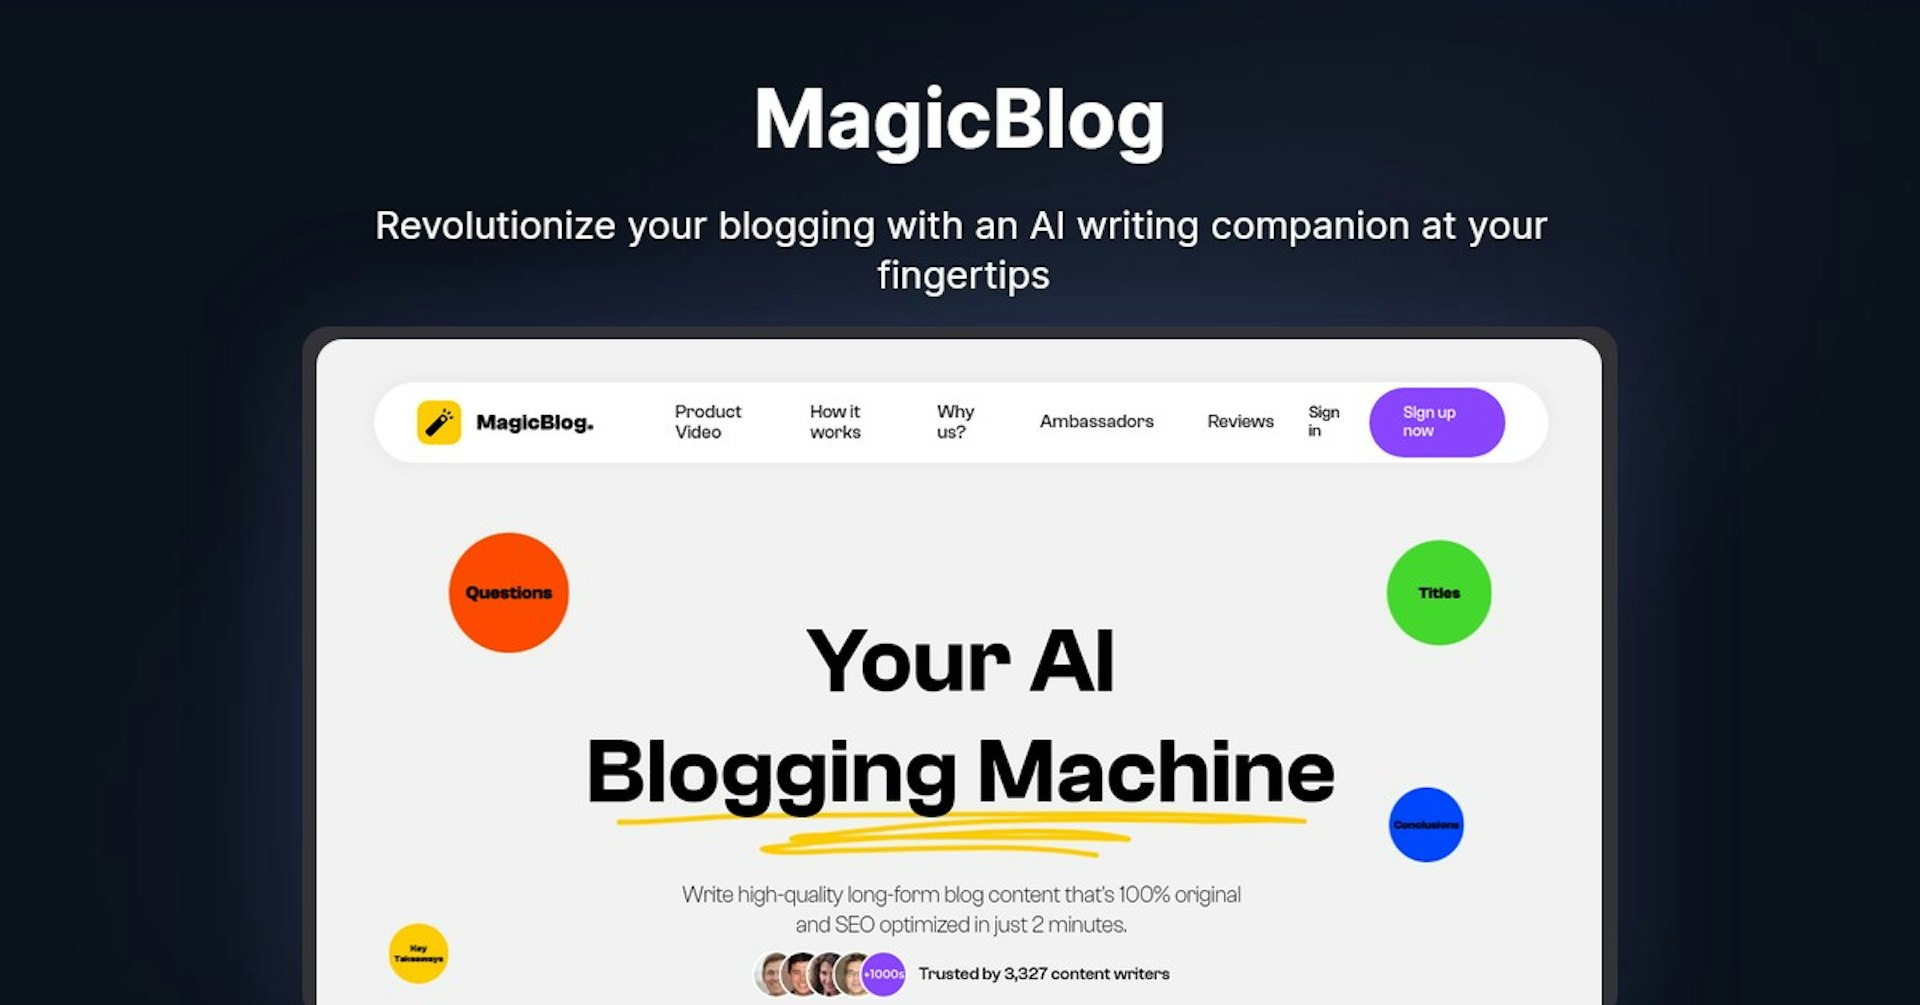 MagicBlog